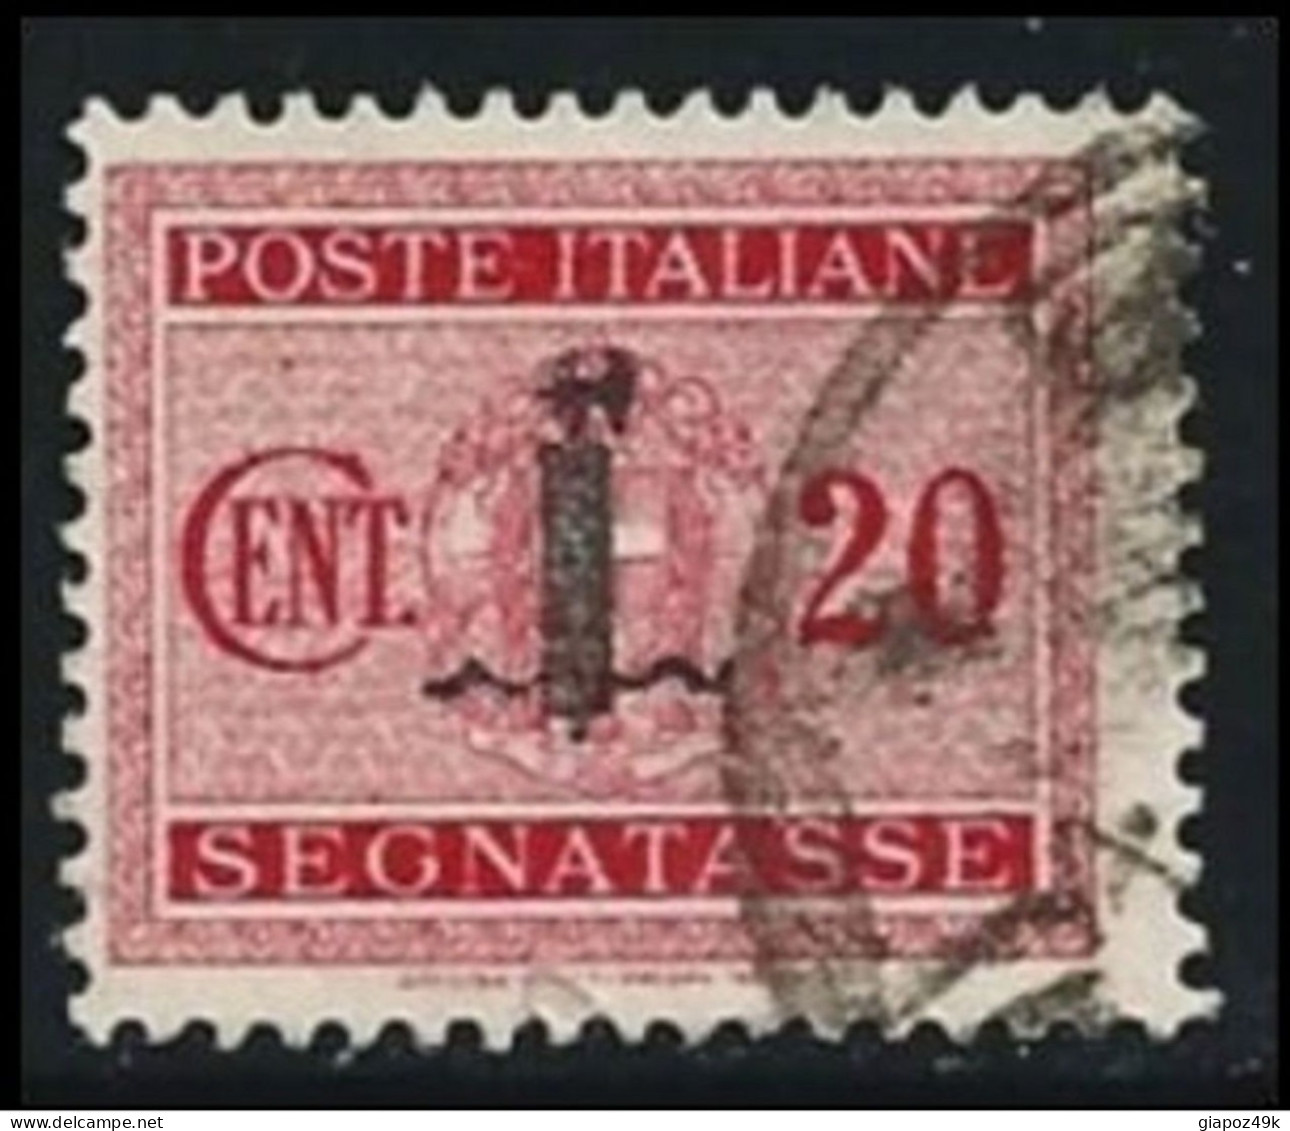 ● ITALIA - R.S.I. 1944 ֍ SEGNATASSE ● N.° 62 Usato ● Fil. S ● Cat. ? € ️● Lotto N. 950 ● - Postage Due